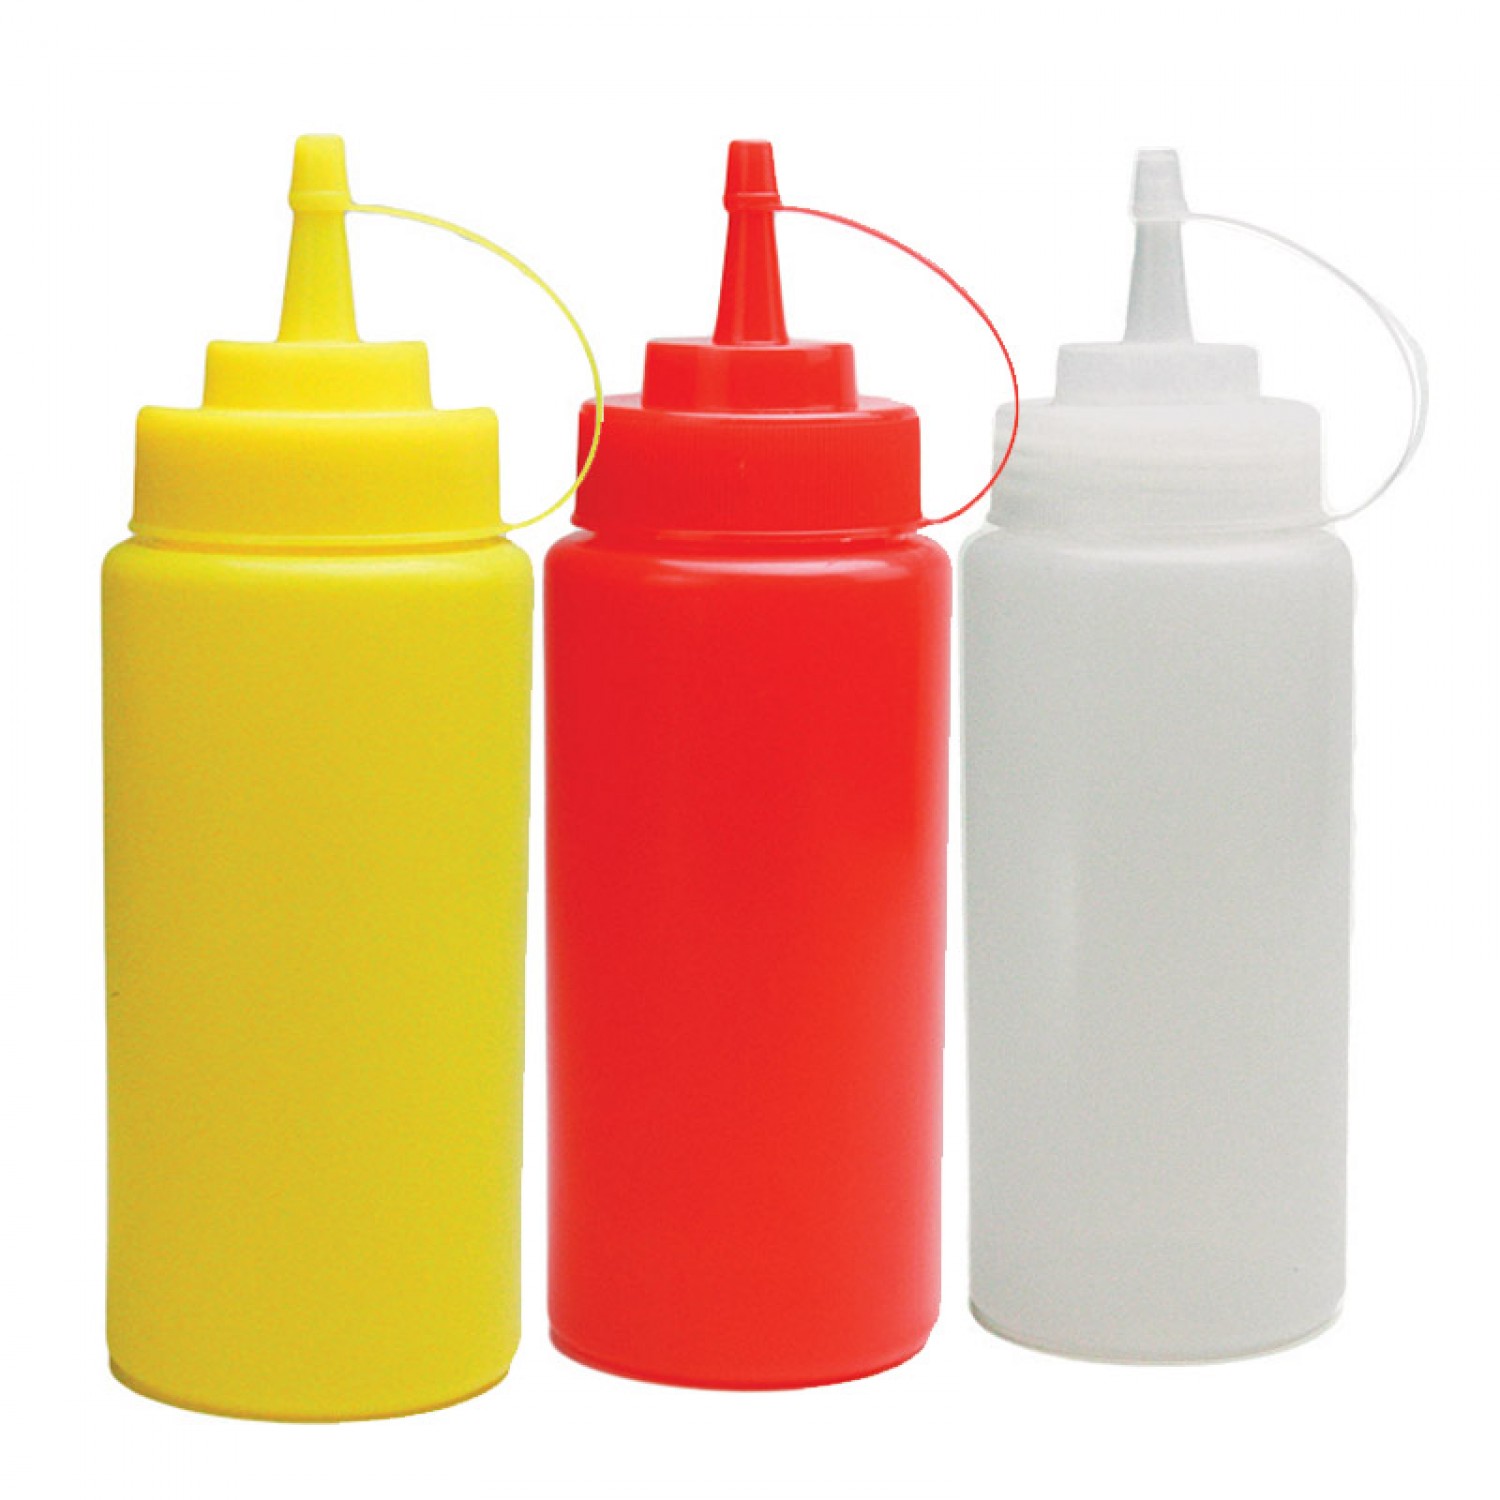 Μπουκάλι πλαστικό σερβιρίσματος Κόκκινο χρώμα 12oz (355ml)